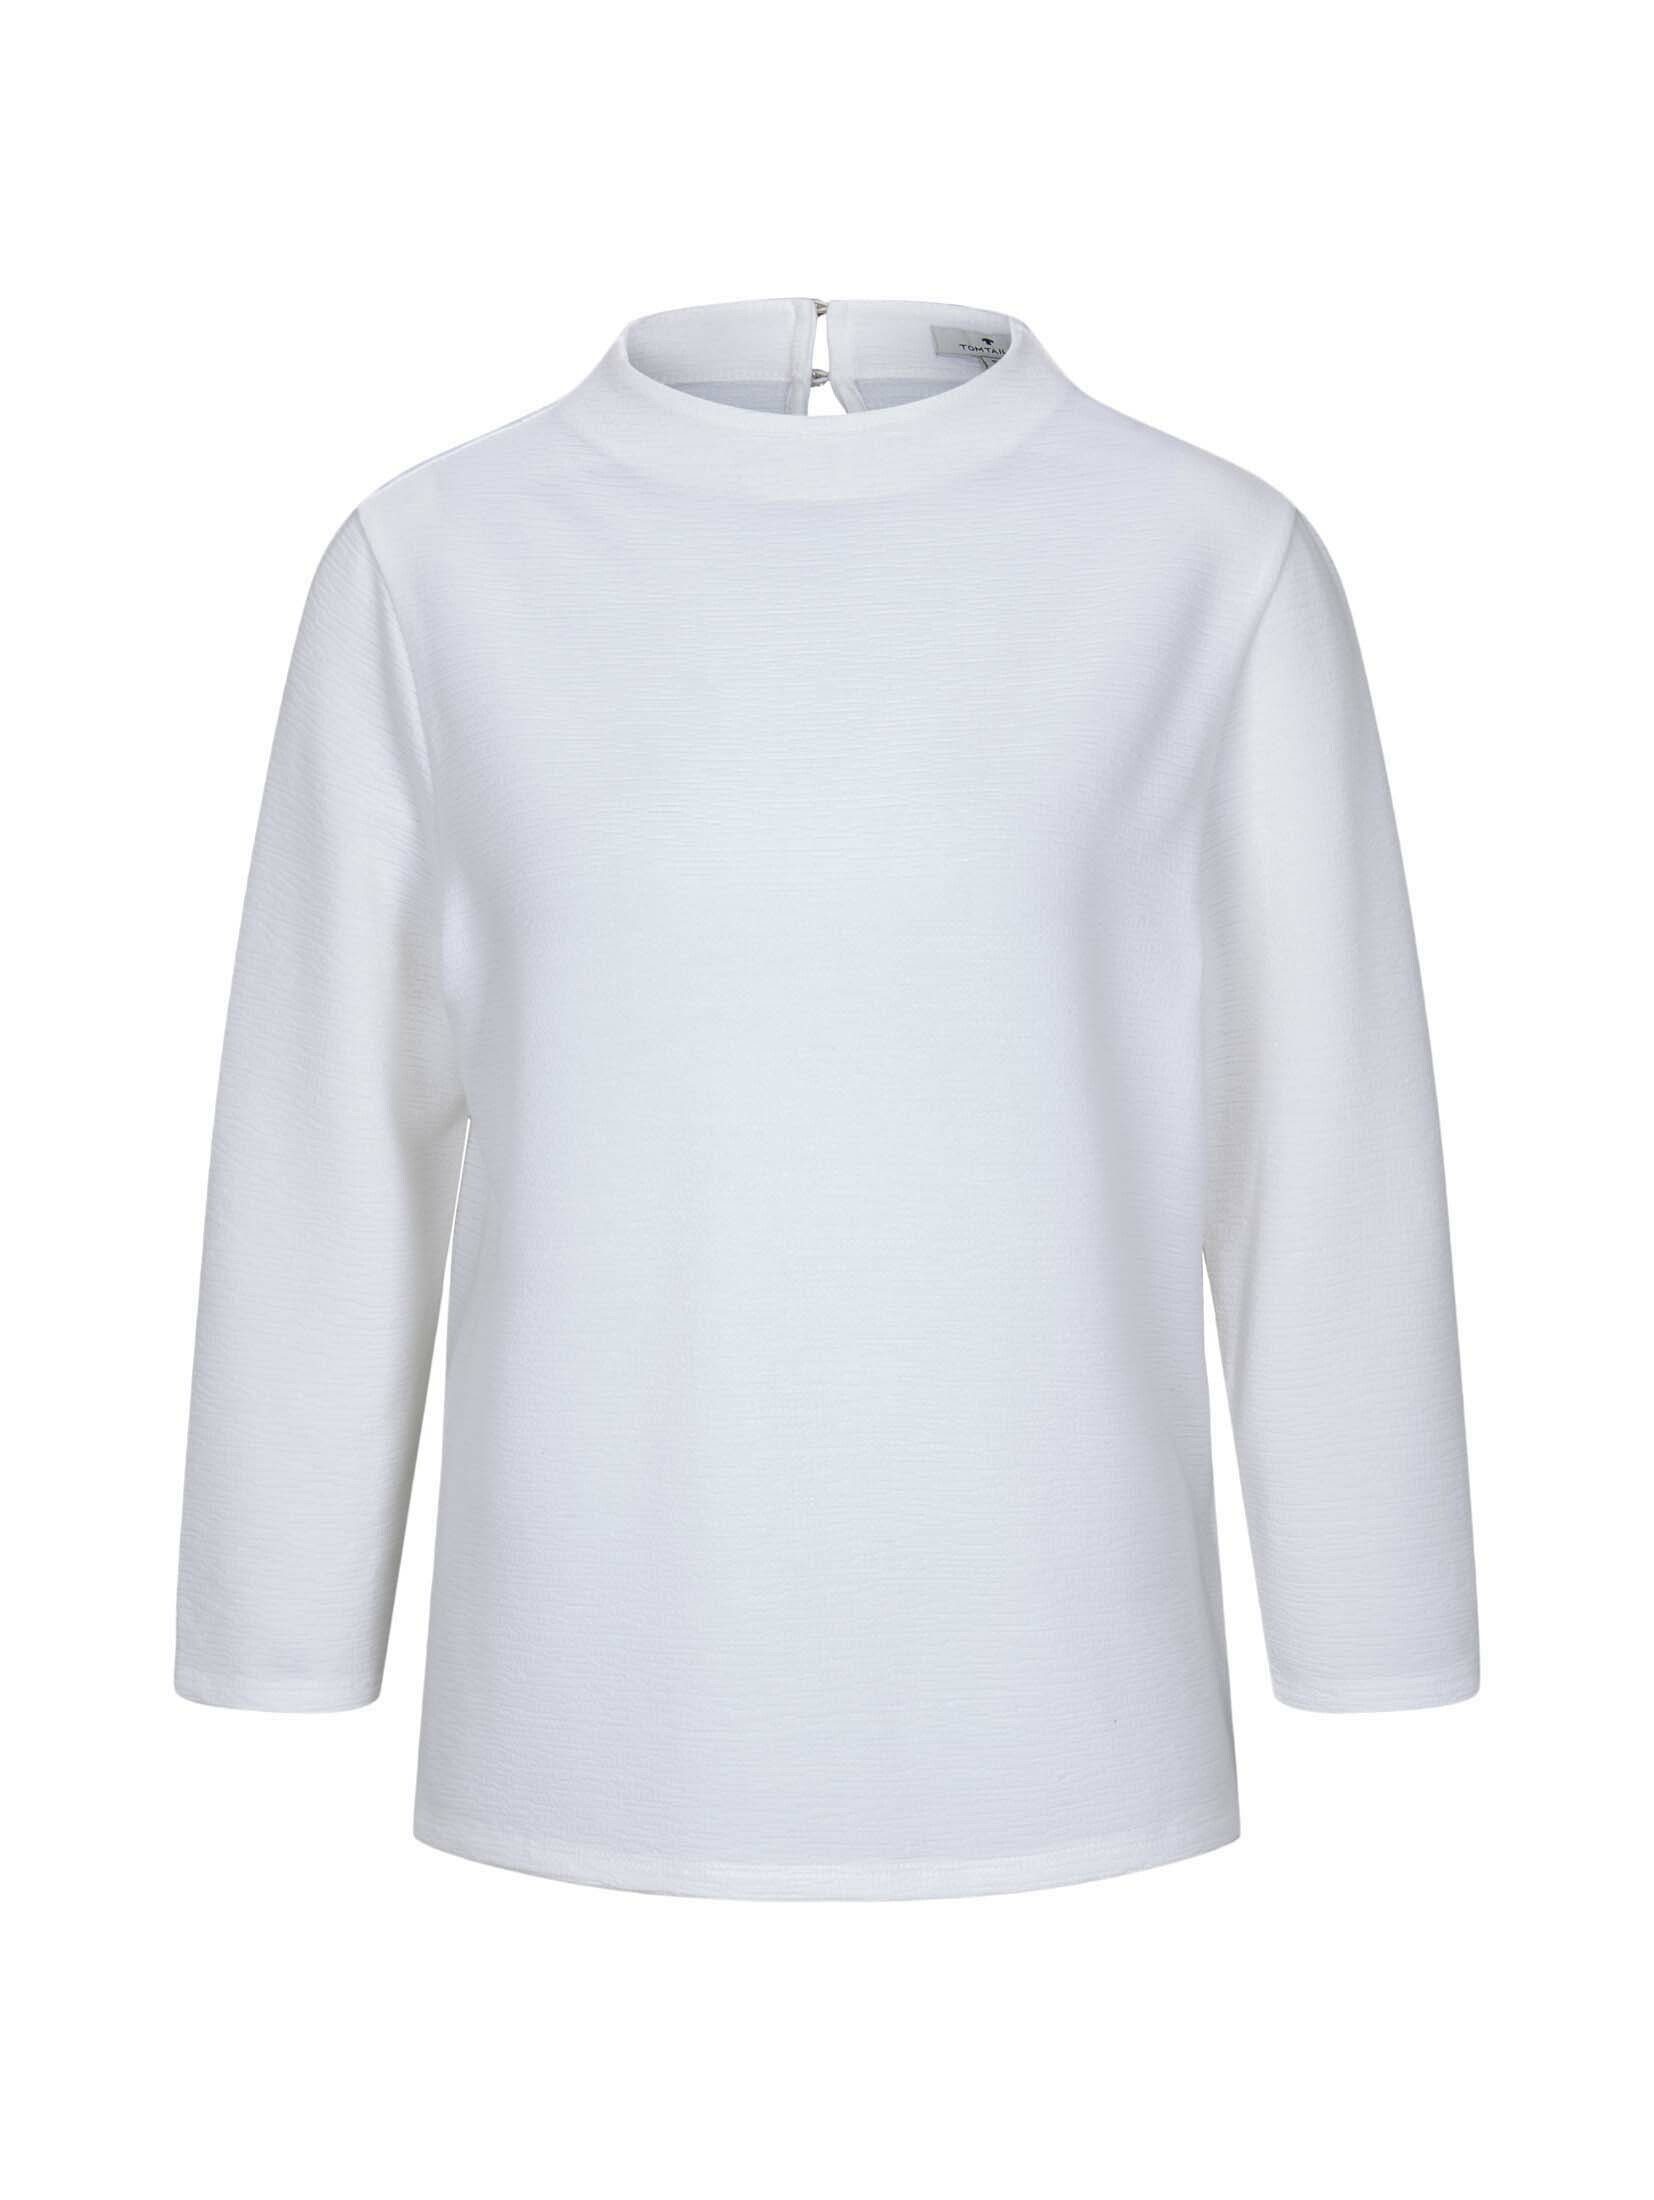 TOM TAILOR T-Shirt Strukturiertes Shirt White Stehkragen Whisper